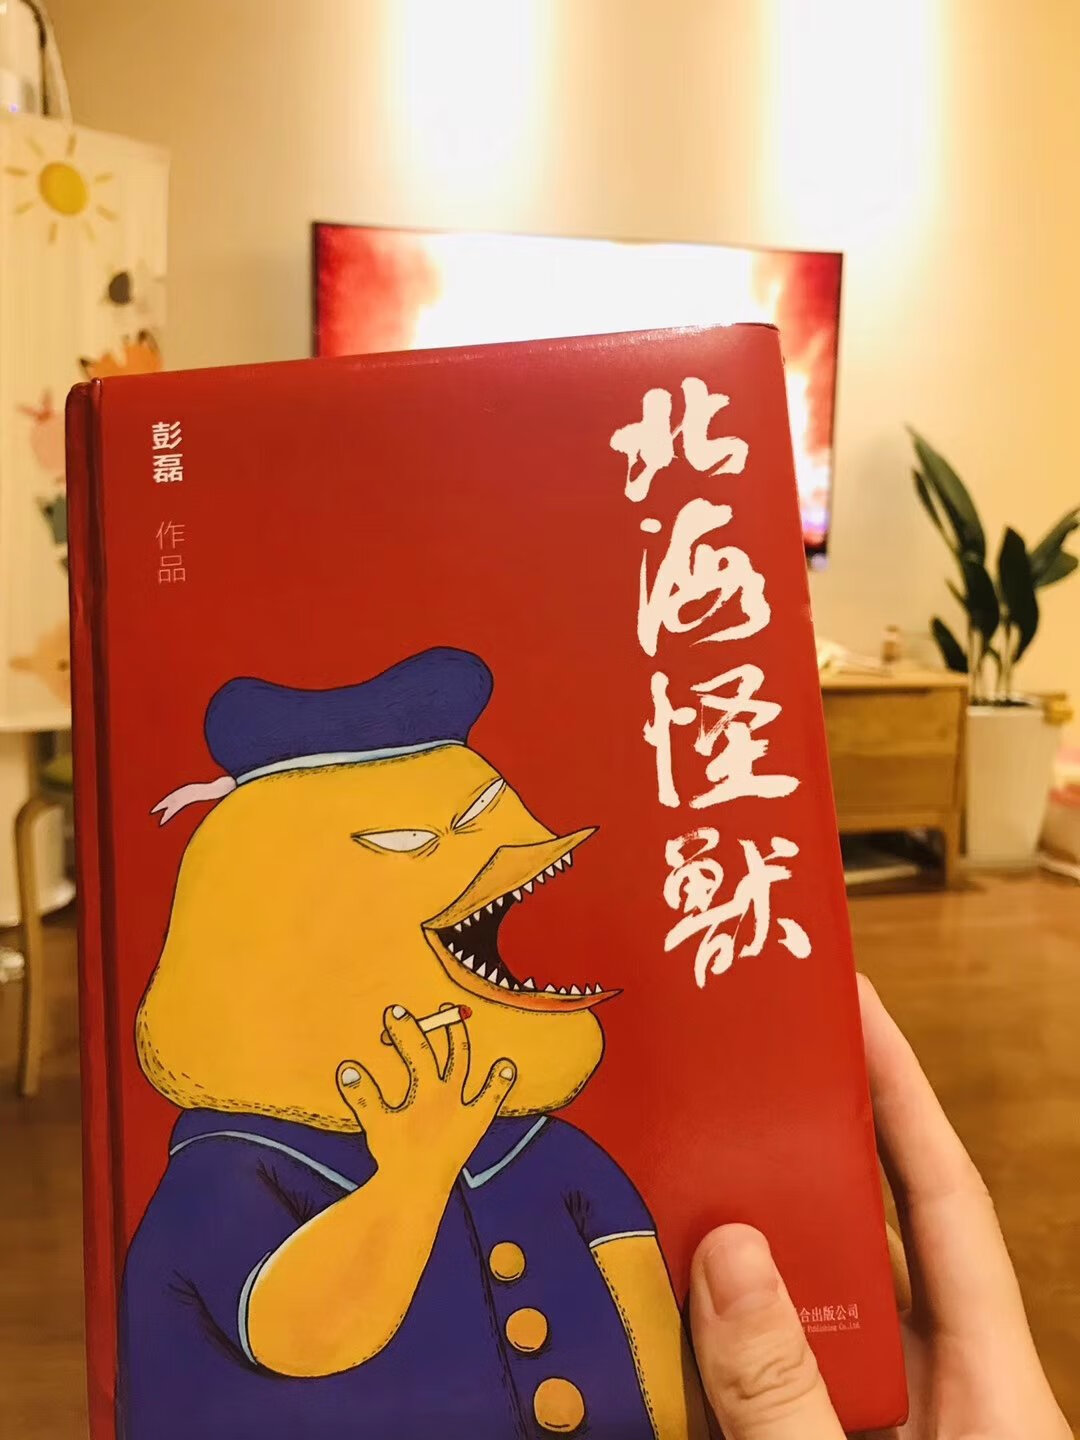 非常好的一本书，喜欢新裤子喜欢胡言胡语的彭磊。